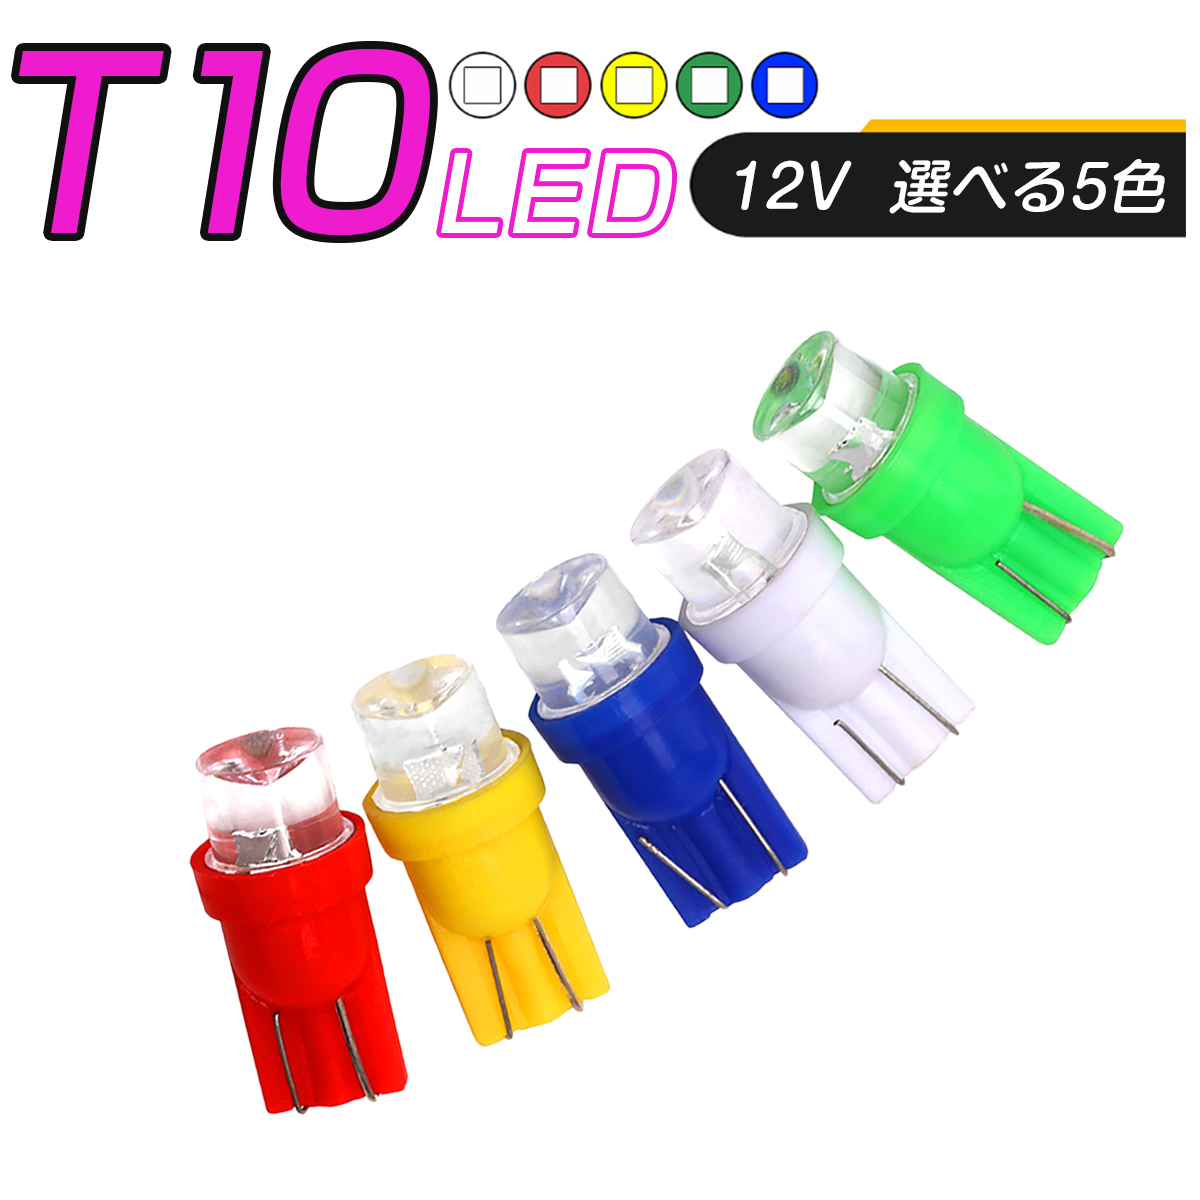 卸売B2B LED T10 SMD 選べるカラー5色 メーター球 タコランプ インジケーター エアコンパネル ウェッジ球 超拡散 全面発光 1個売り SDM便送料無料 1ヶ月保証 K&M